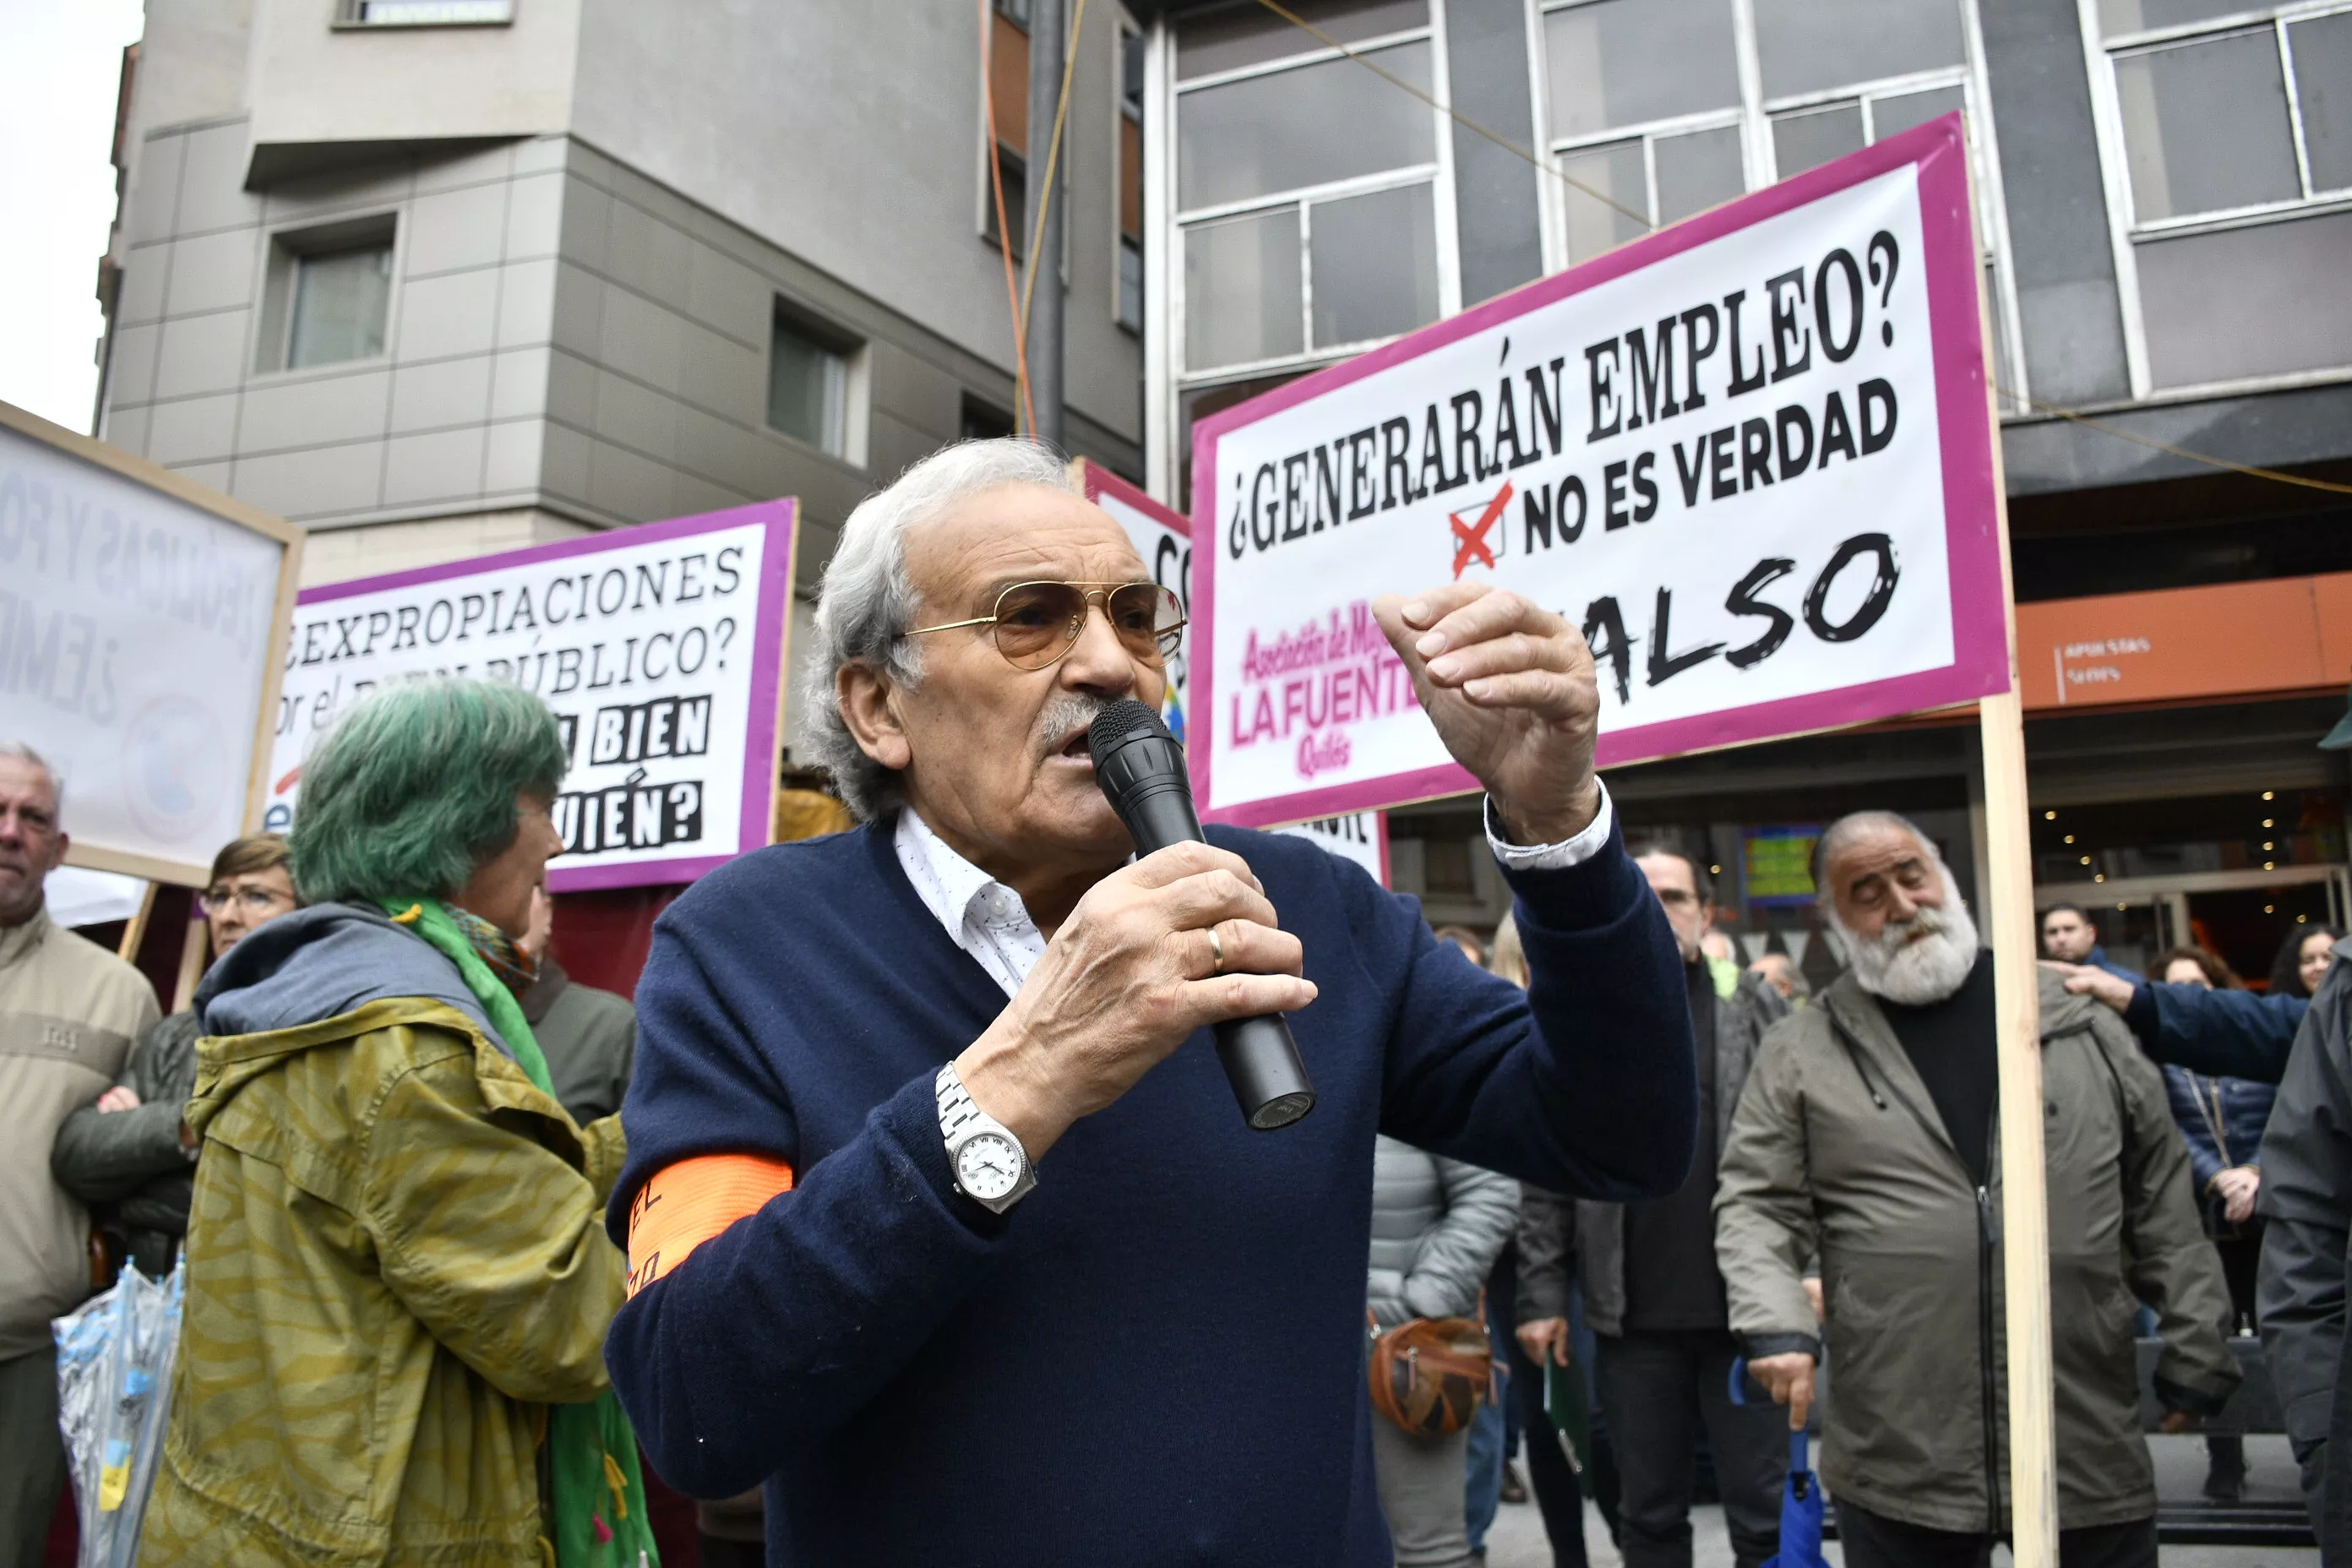  Manifestación contra la tramitación de macroparques eólicos y solares en El Bierzo